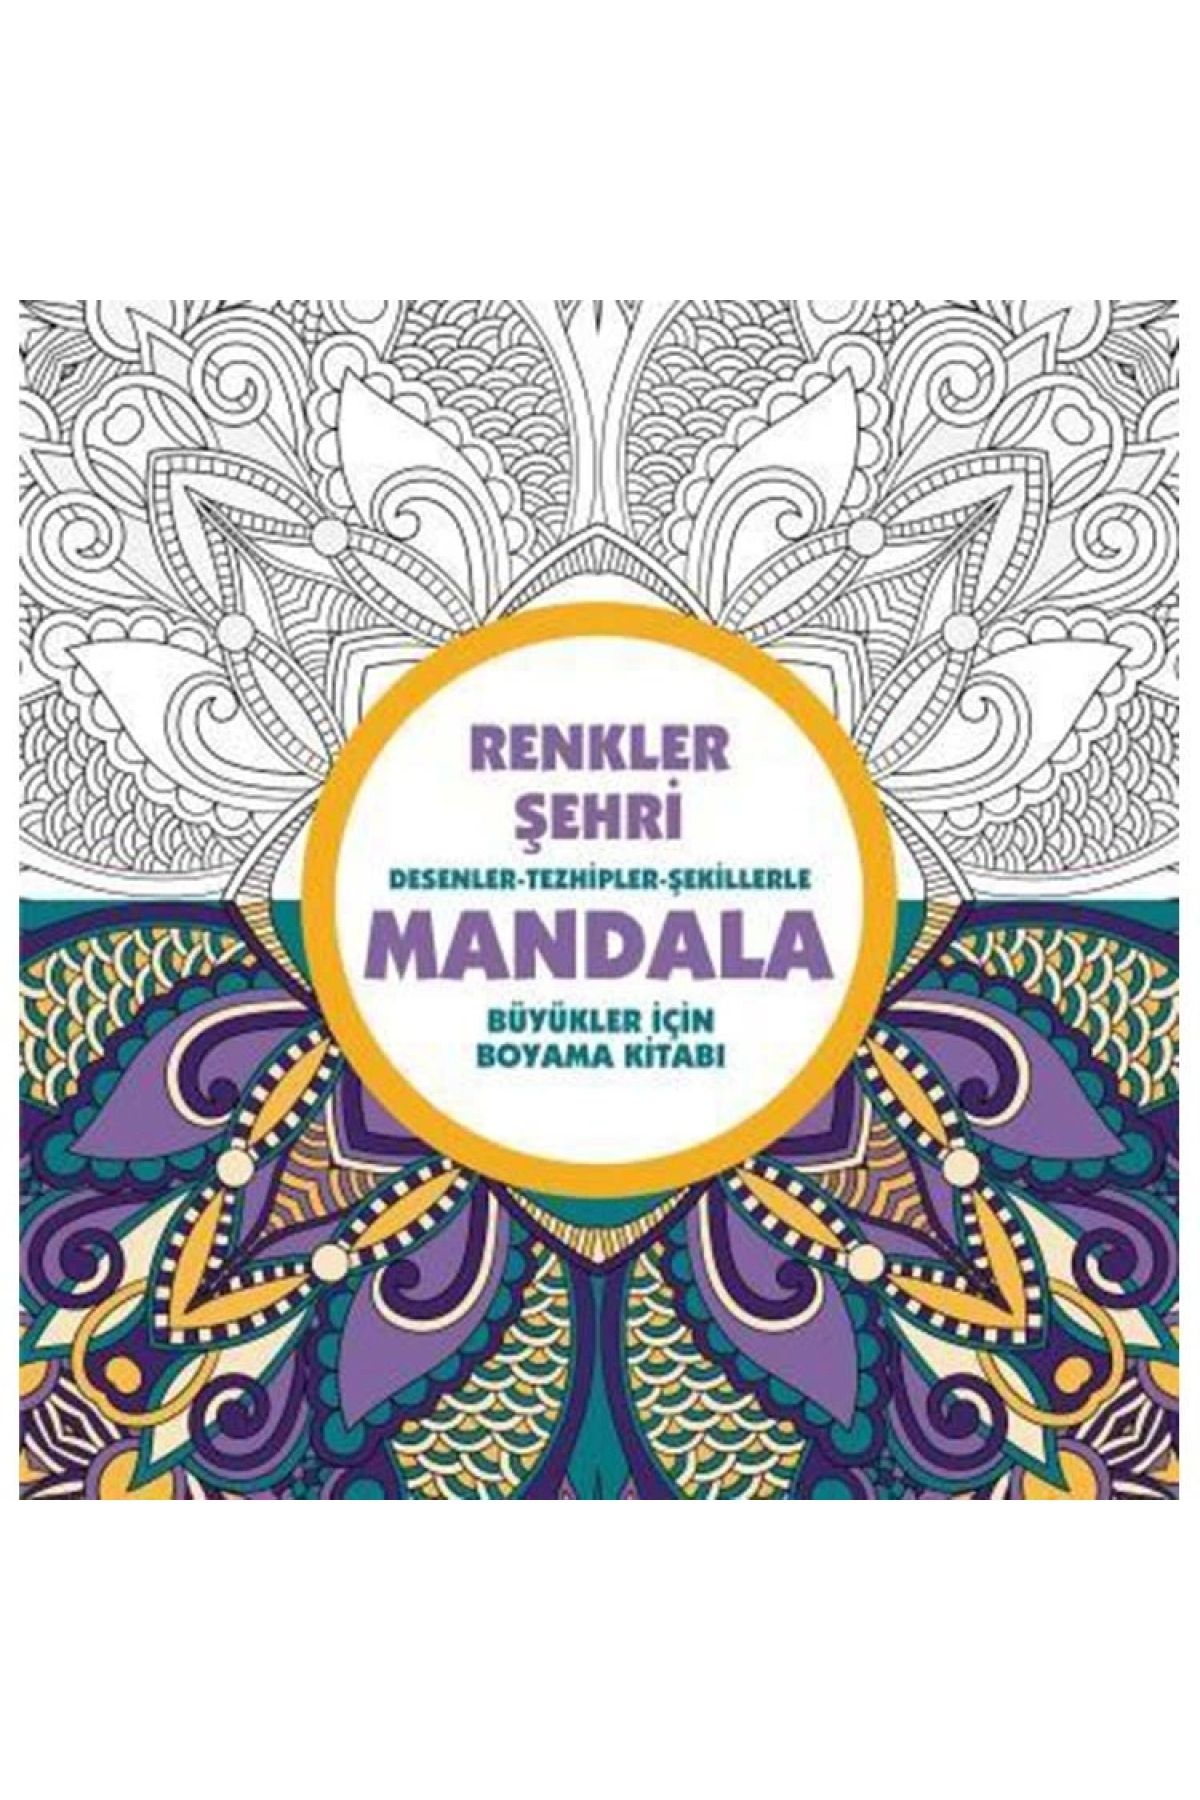 Genel Markalar Renkler Şehri - Mandala (BÜYÜKLER IÇİN BOYAMA) Kitabı -